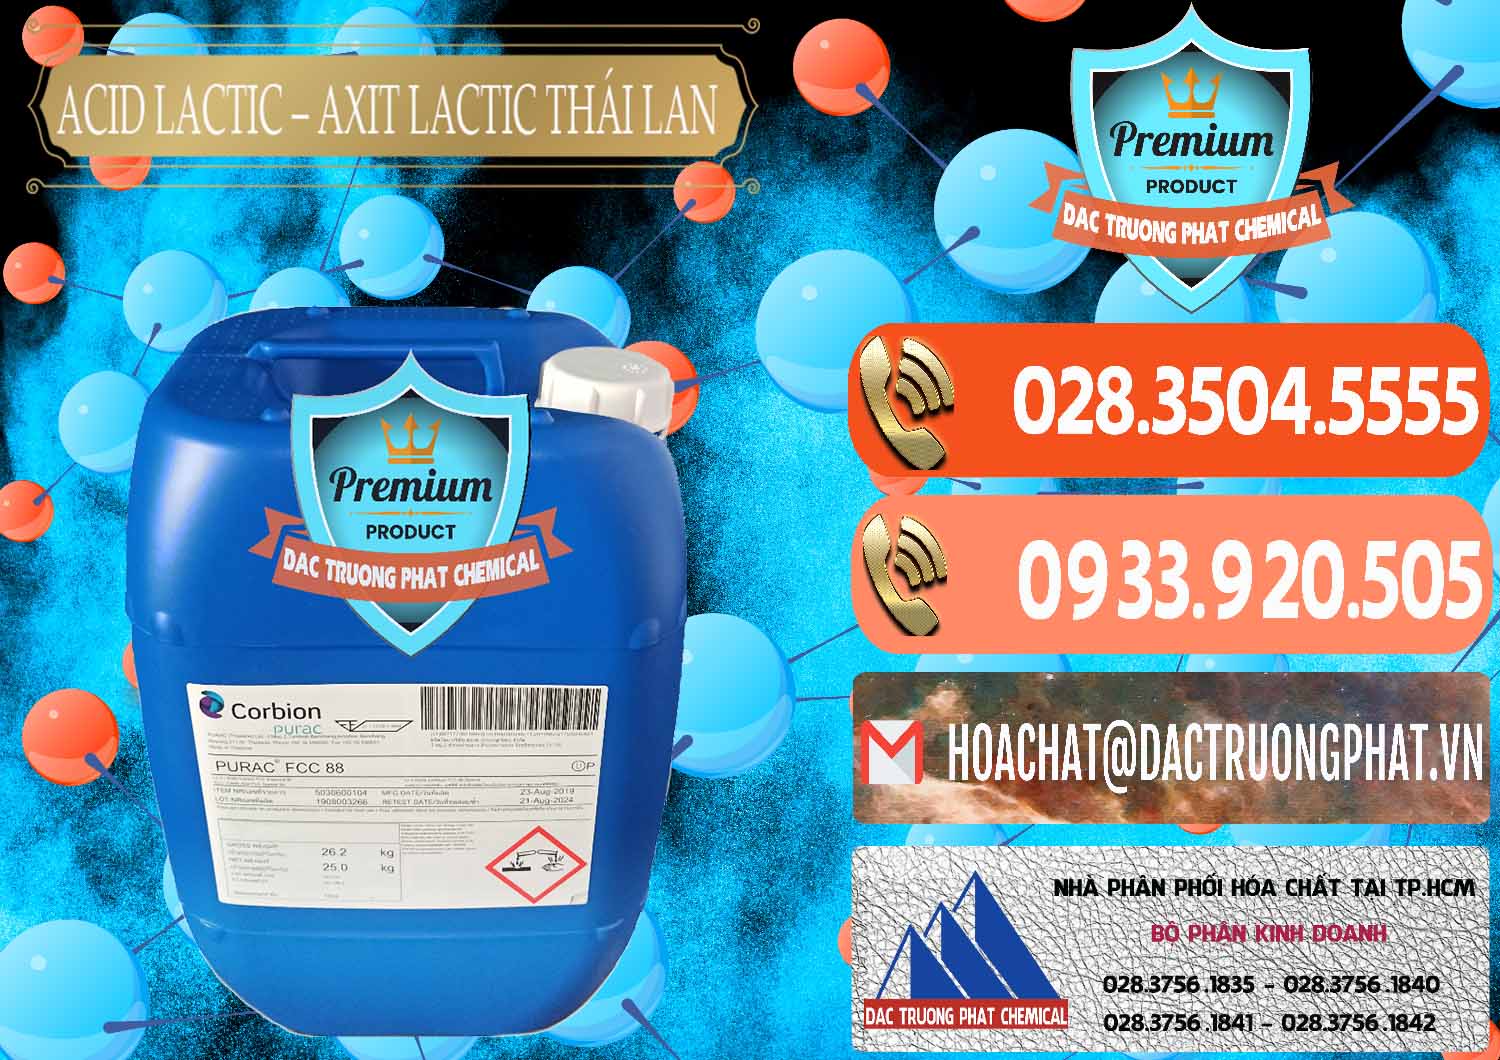 Đơn vị cung cấp và bán Acid Lactic – Axit Lactic Thái Lan Purac FCC 88 - 0012 - Công ty phân phối _ cung cấp hóa chất tại TP.HCM - hoachatmientay.com